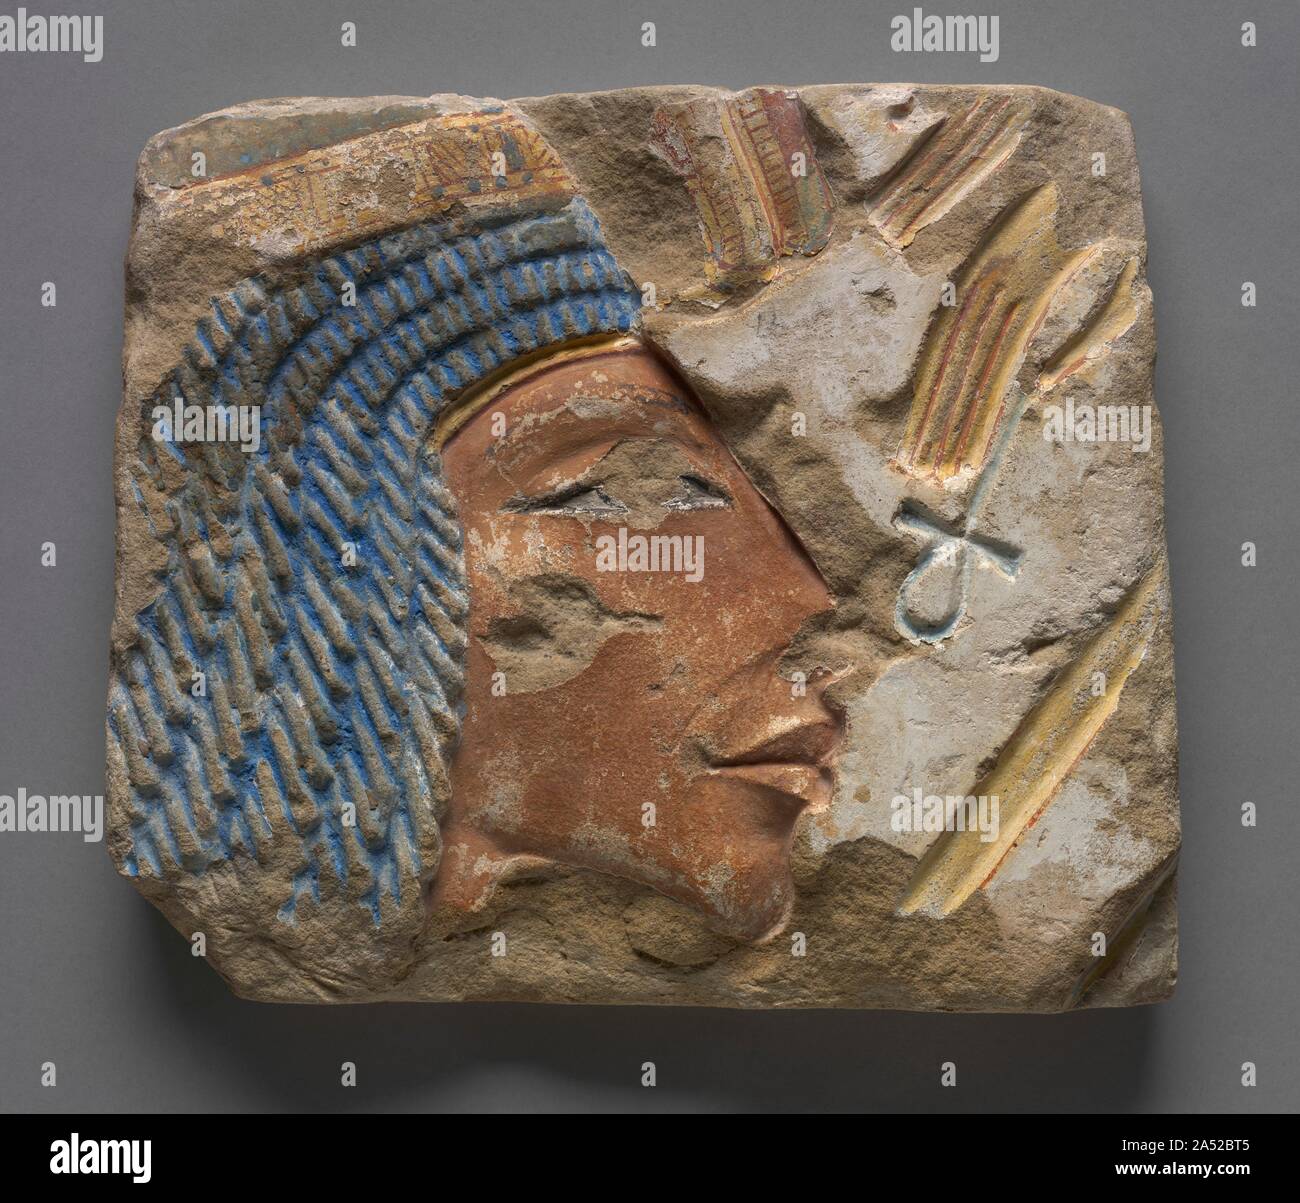 Talatat: Ritratto di Nefertiti, c. 1353-1347 A.C. Il figlio di Amenhotep III, Akhenaton, portato circa la vita breve "monoteista" rivoluzione nella religione egiziana in prossimità della fine della dinastia 18. Il giovane re costruito un tempio complesso di Aton, Sun Disk, a Karnak&#x2014;dal quale questi rilievi venire&#x2014;prima vi trasferì la sua capitale a El Armana. Per ragioni ancora sconosciute, la figura della regina Nefertiti appare in questi rilievi molto più spesso rispetto a quello del re. Per ironia della sorte, templi Aten sono stati smantellati anticamente per essere utilizzati come fondazioni e riempire di aggiunte al Foto Stock